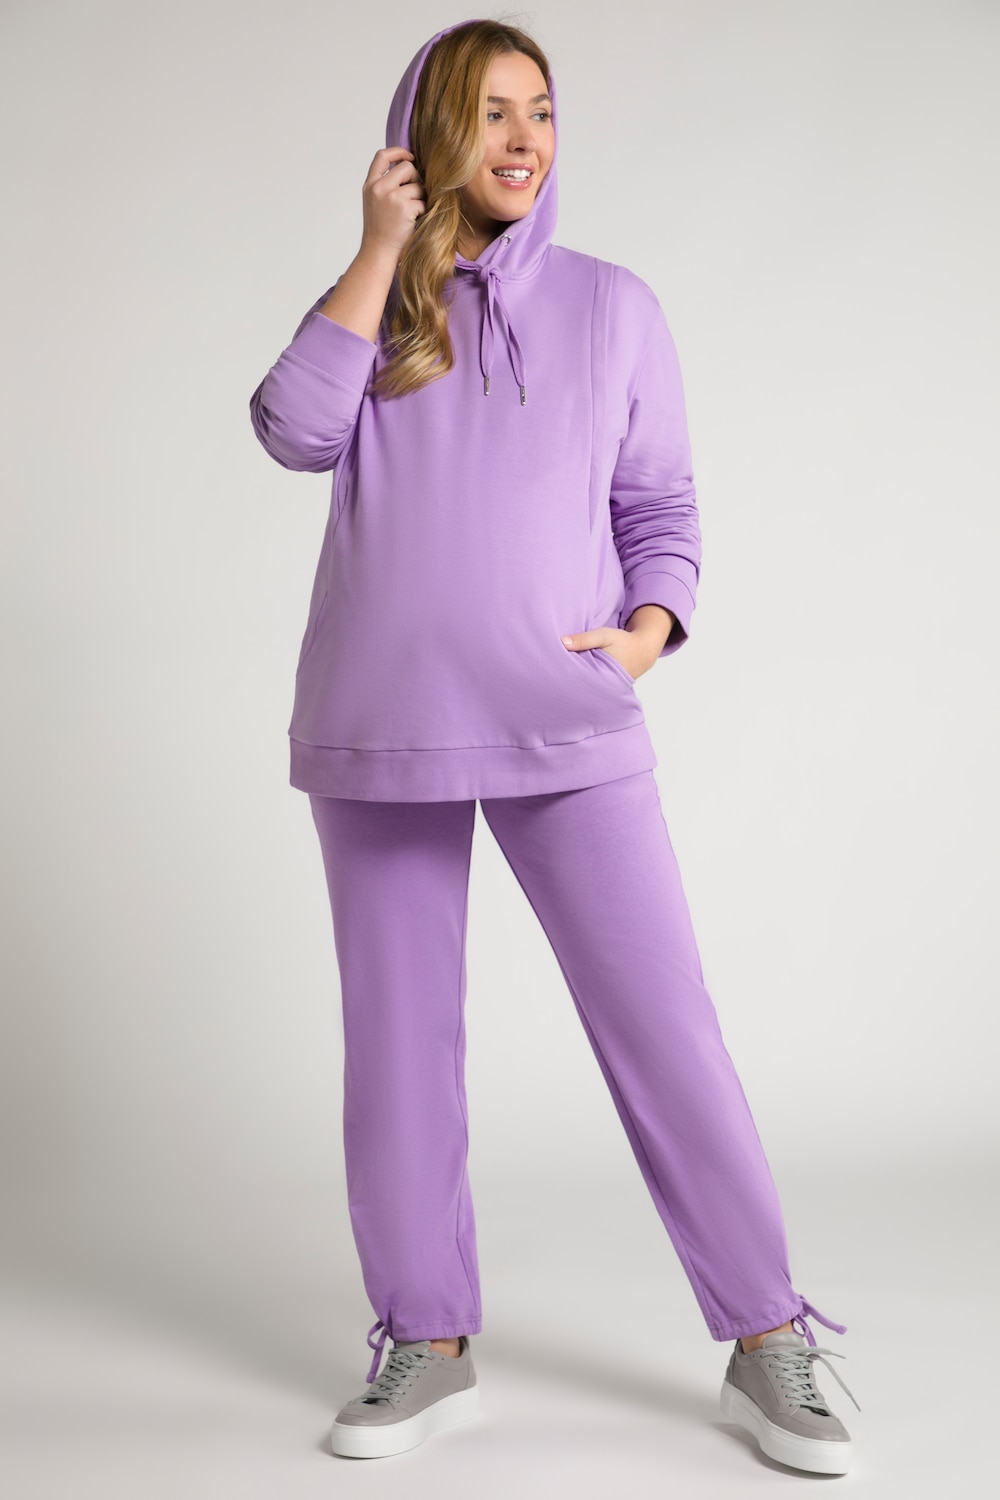 Plus Size Bellieva Nursing Friendly Hooded Sweatshirt, Woman, purple, size: 16/18, cotton, Ulla Popken